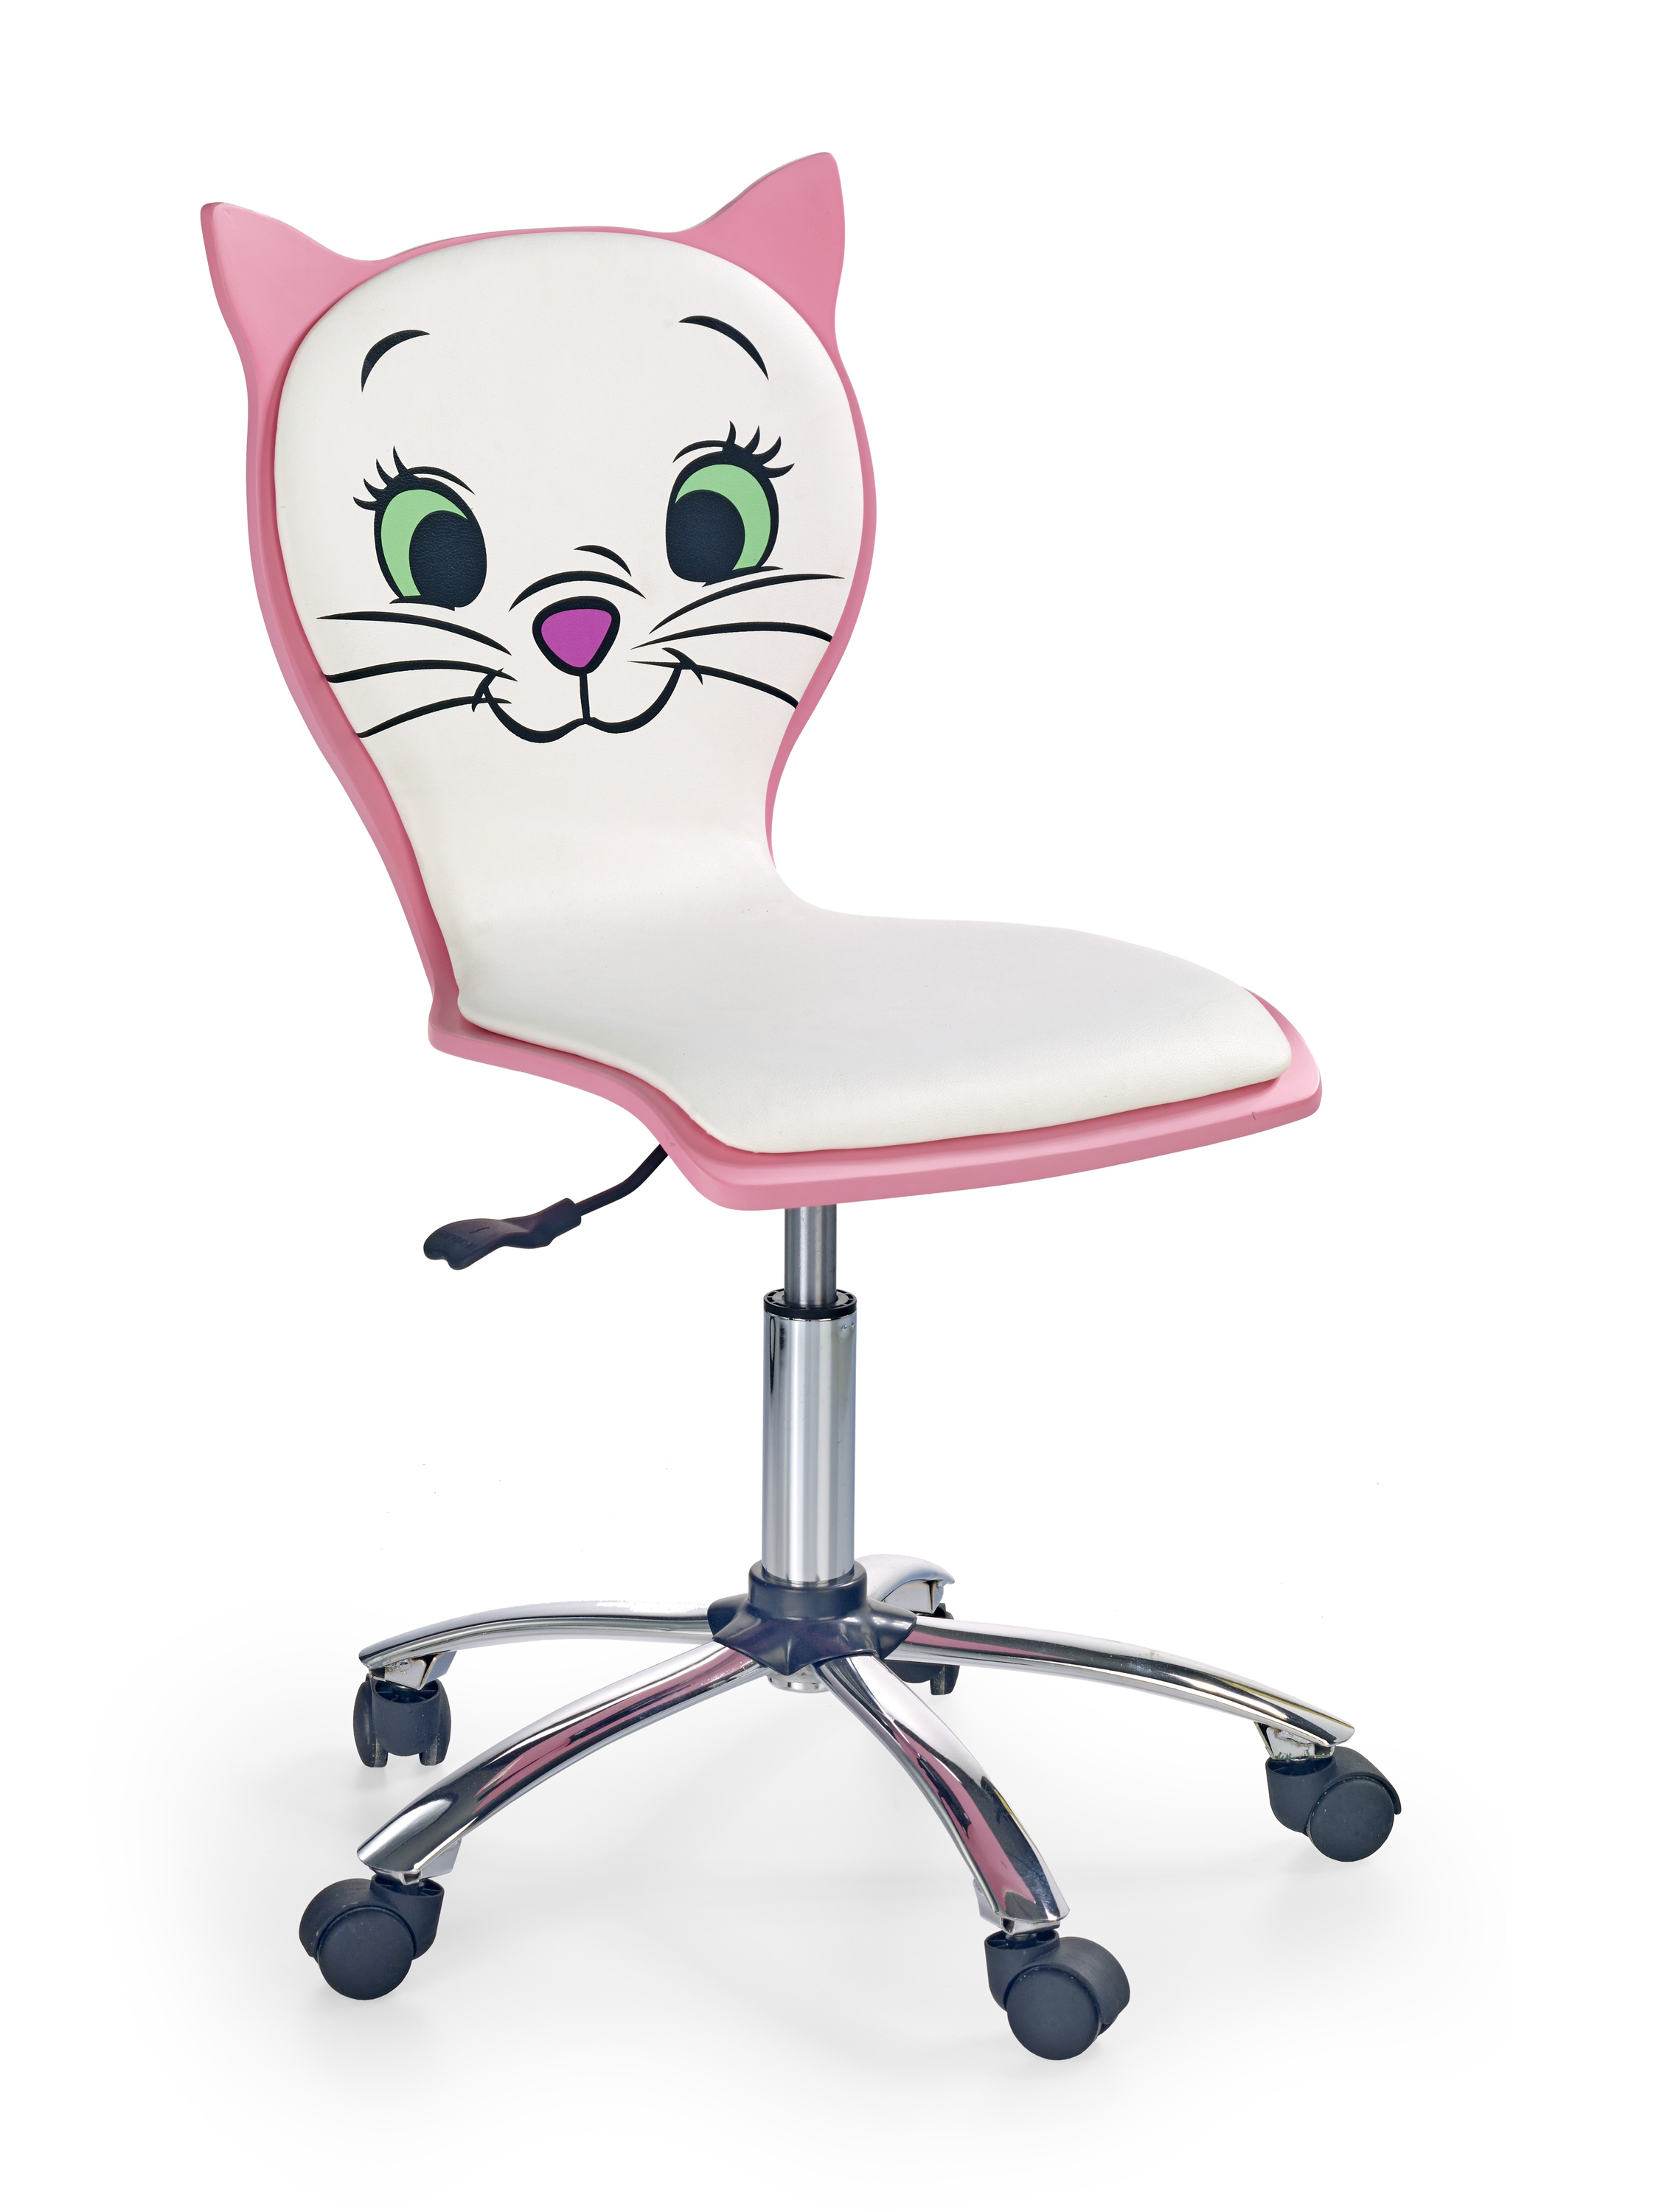 Kancelářske křeslo Kitty 2 - Bílý/Růžový kitty 2 Křeslo Pro mladé Bílá-Růžová